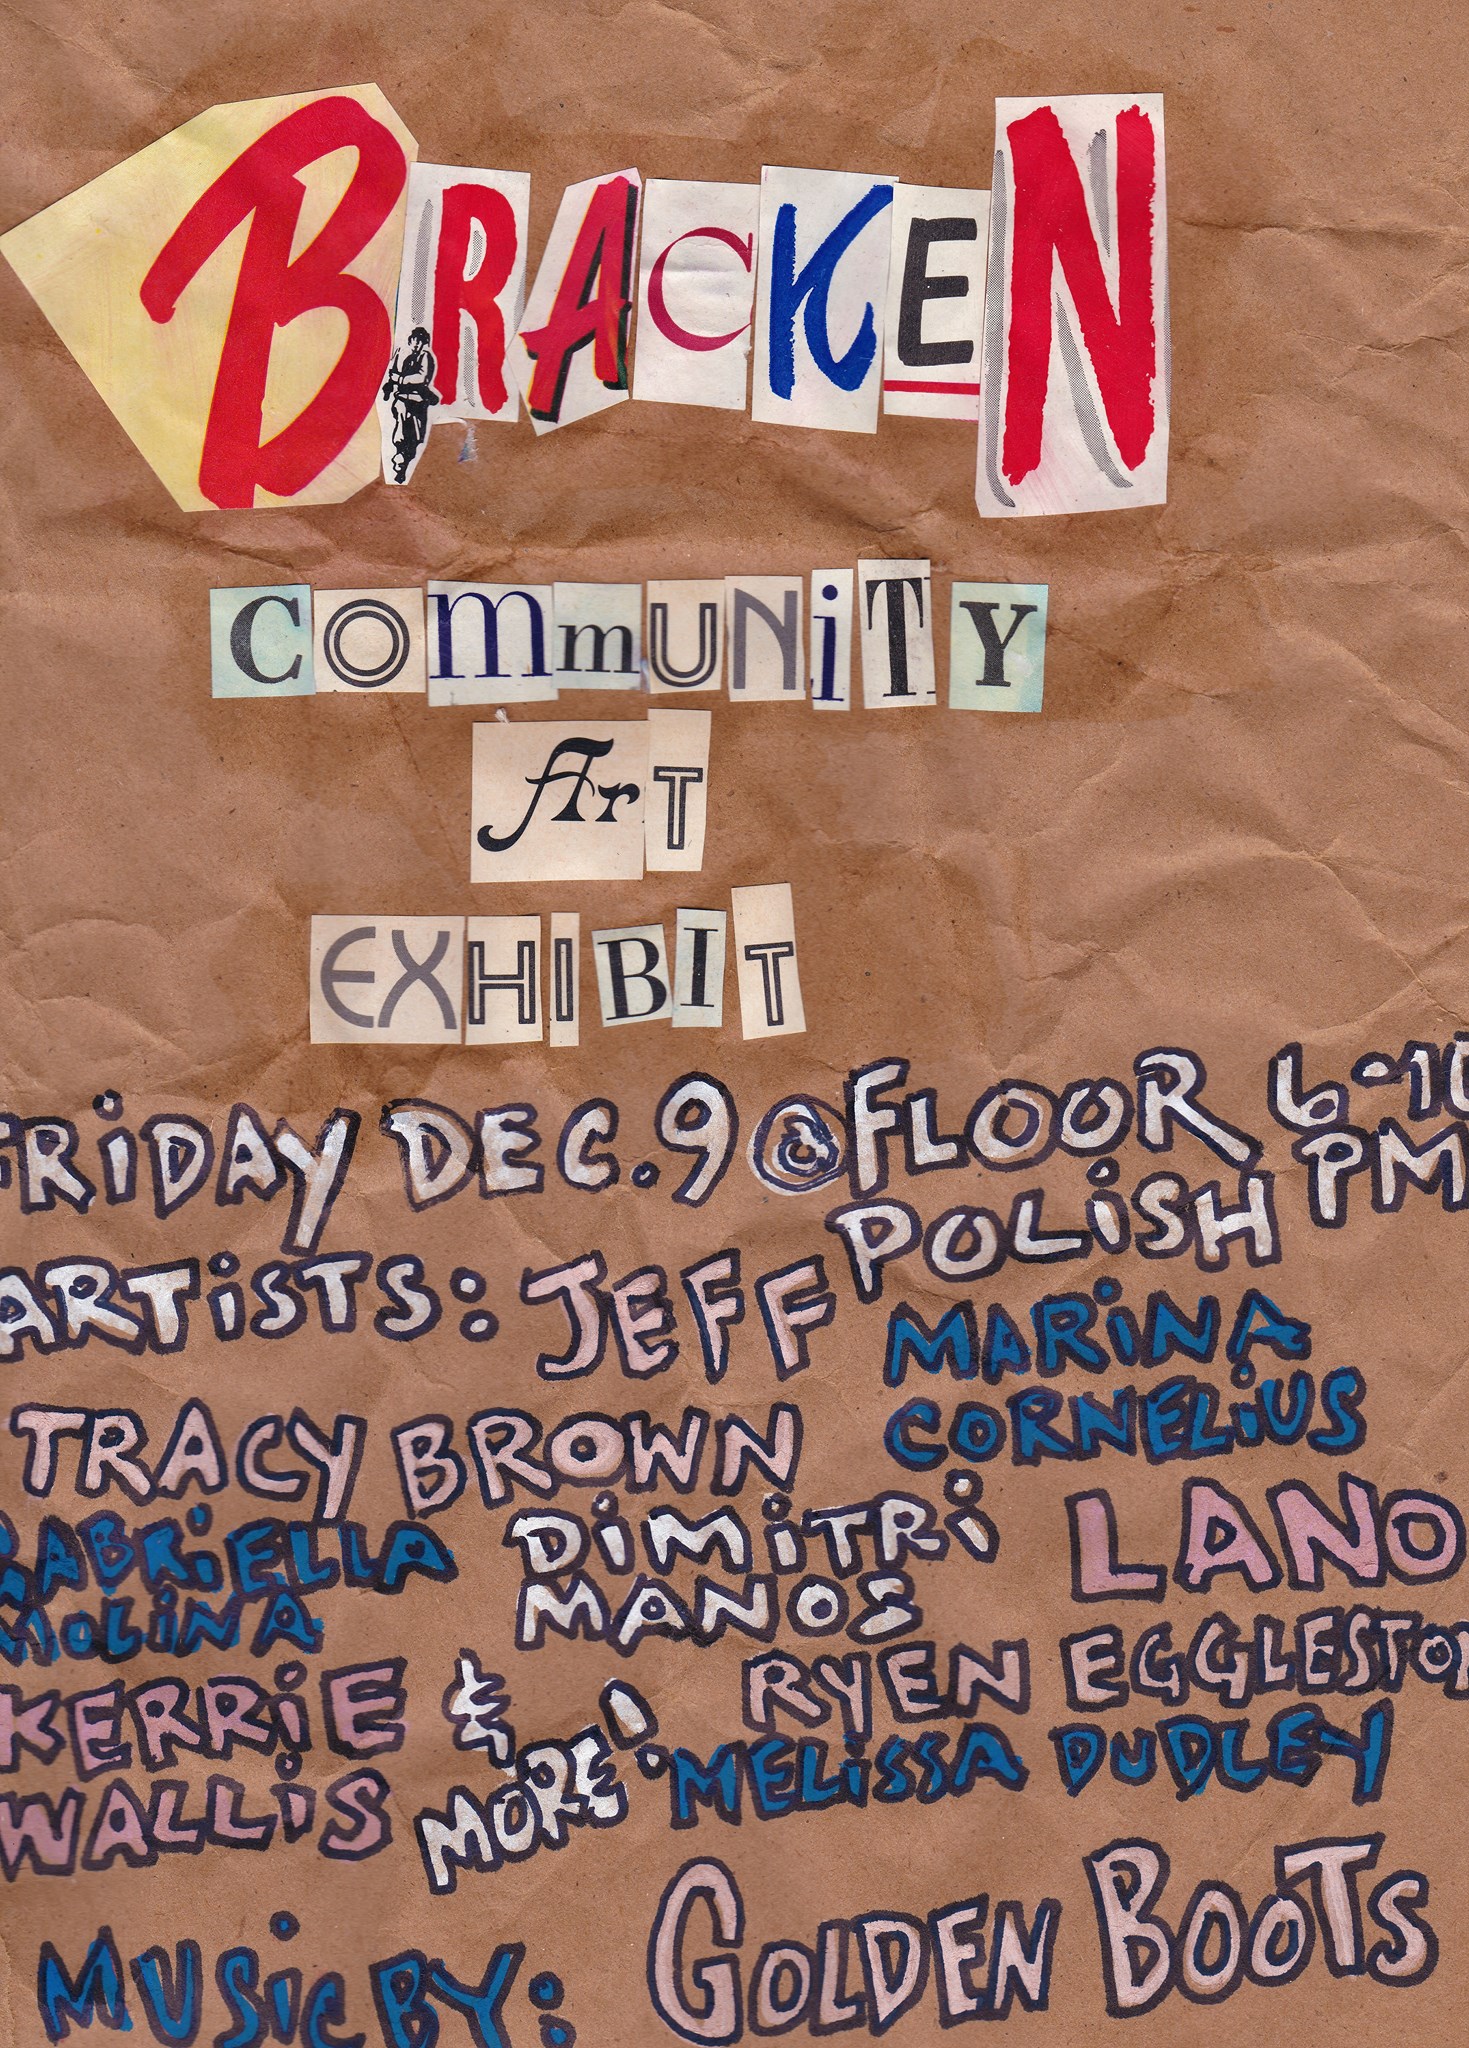 Bracken: Community Art Exhibit opening Friday. December 9th at Floor Polish